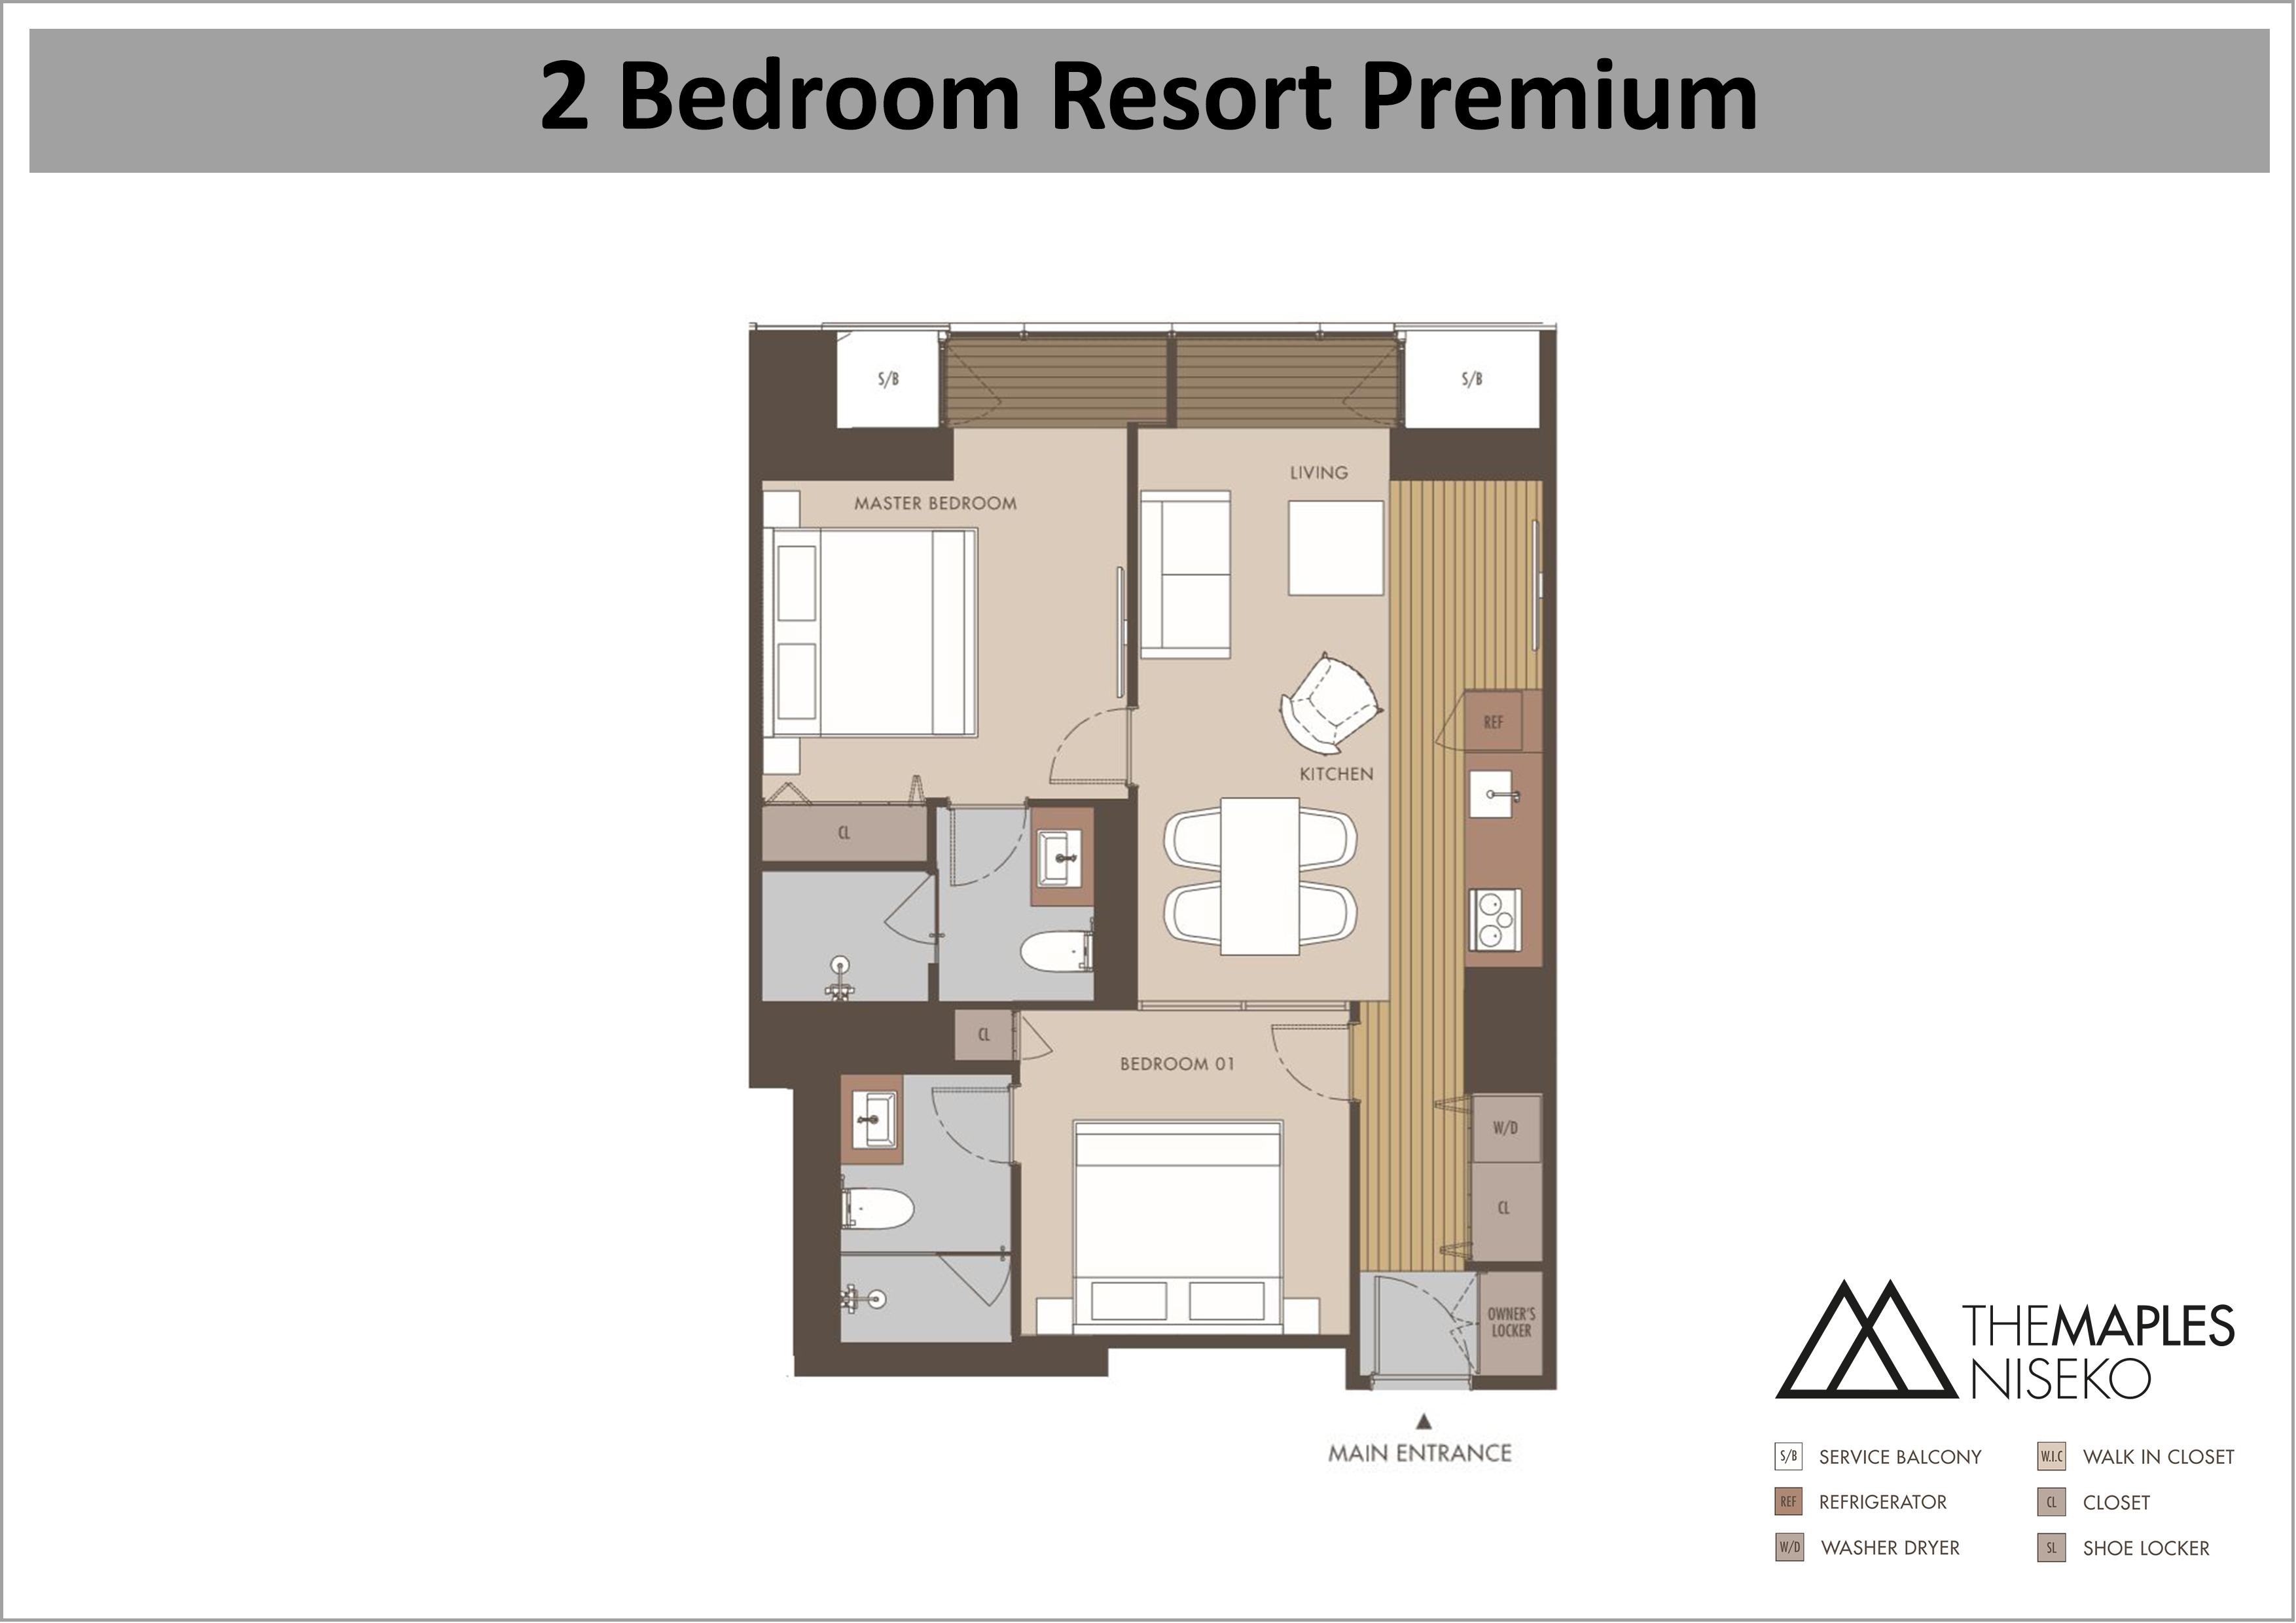 The Maples - 2 Bedroom Resort Premium floor plan